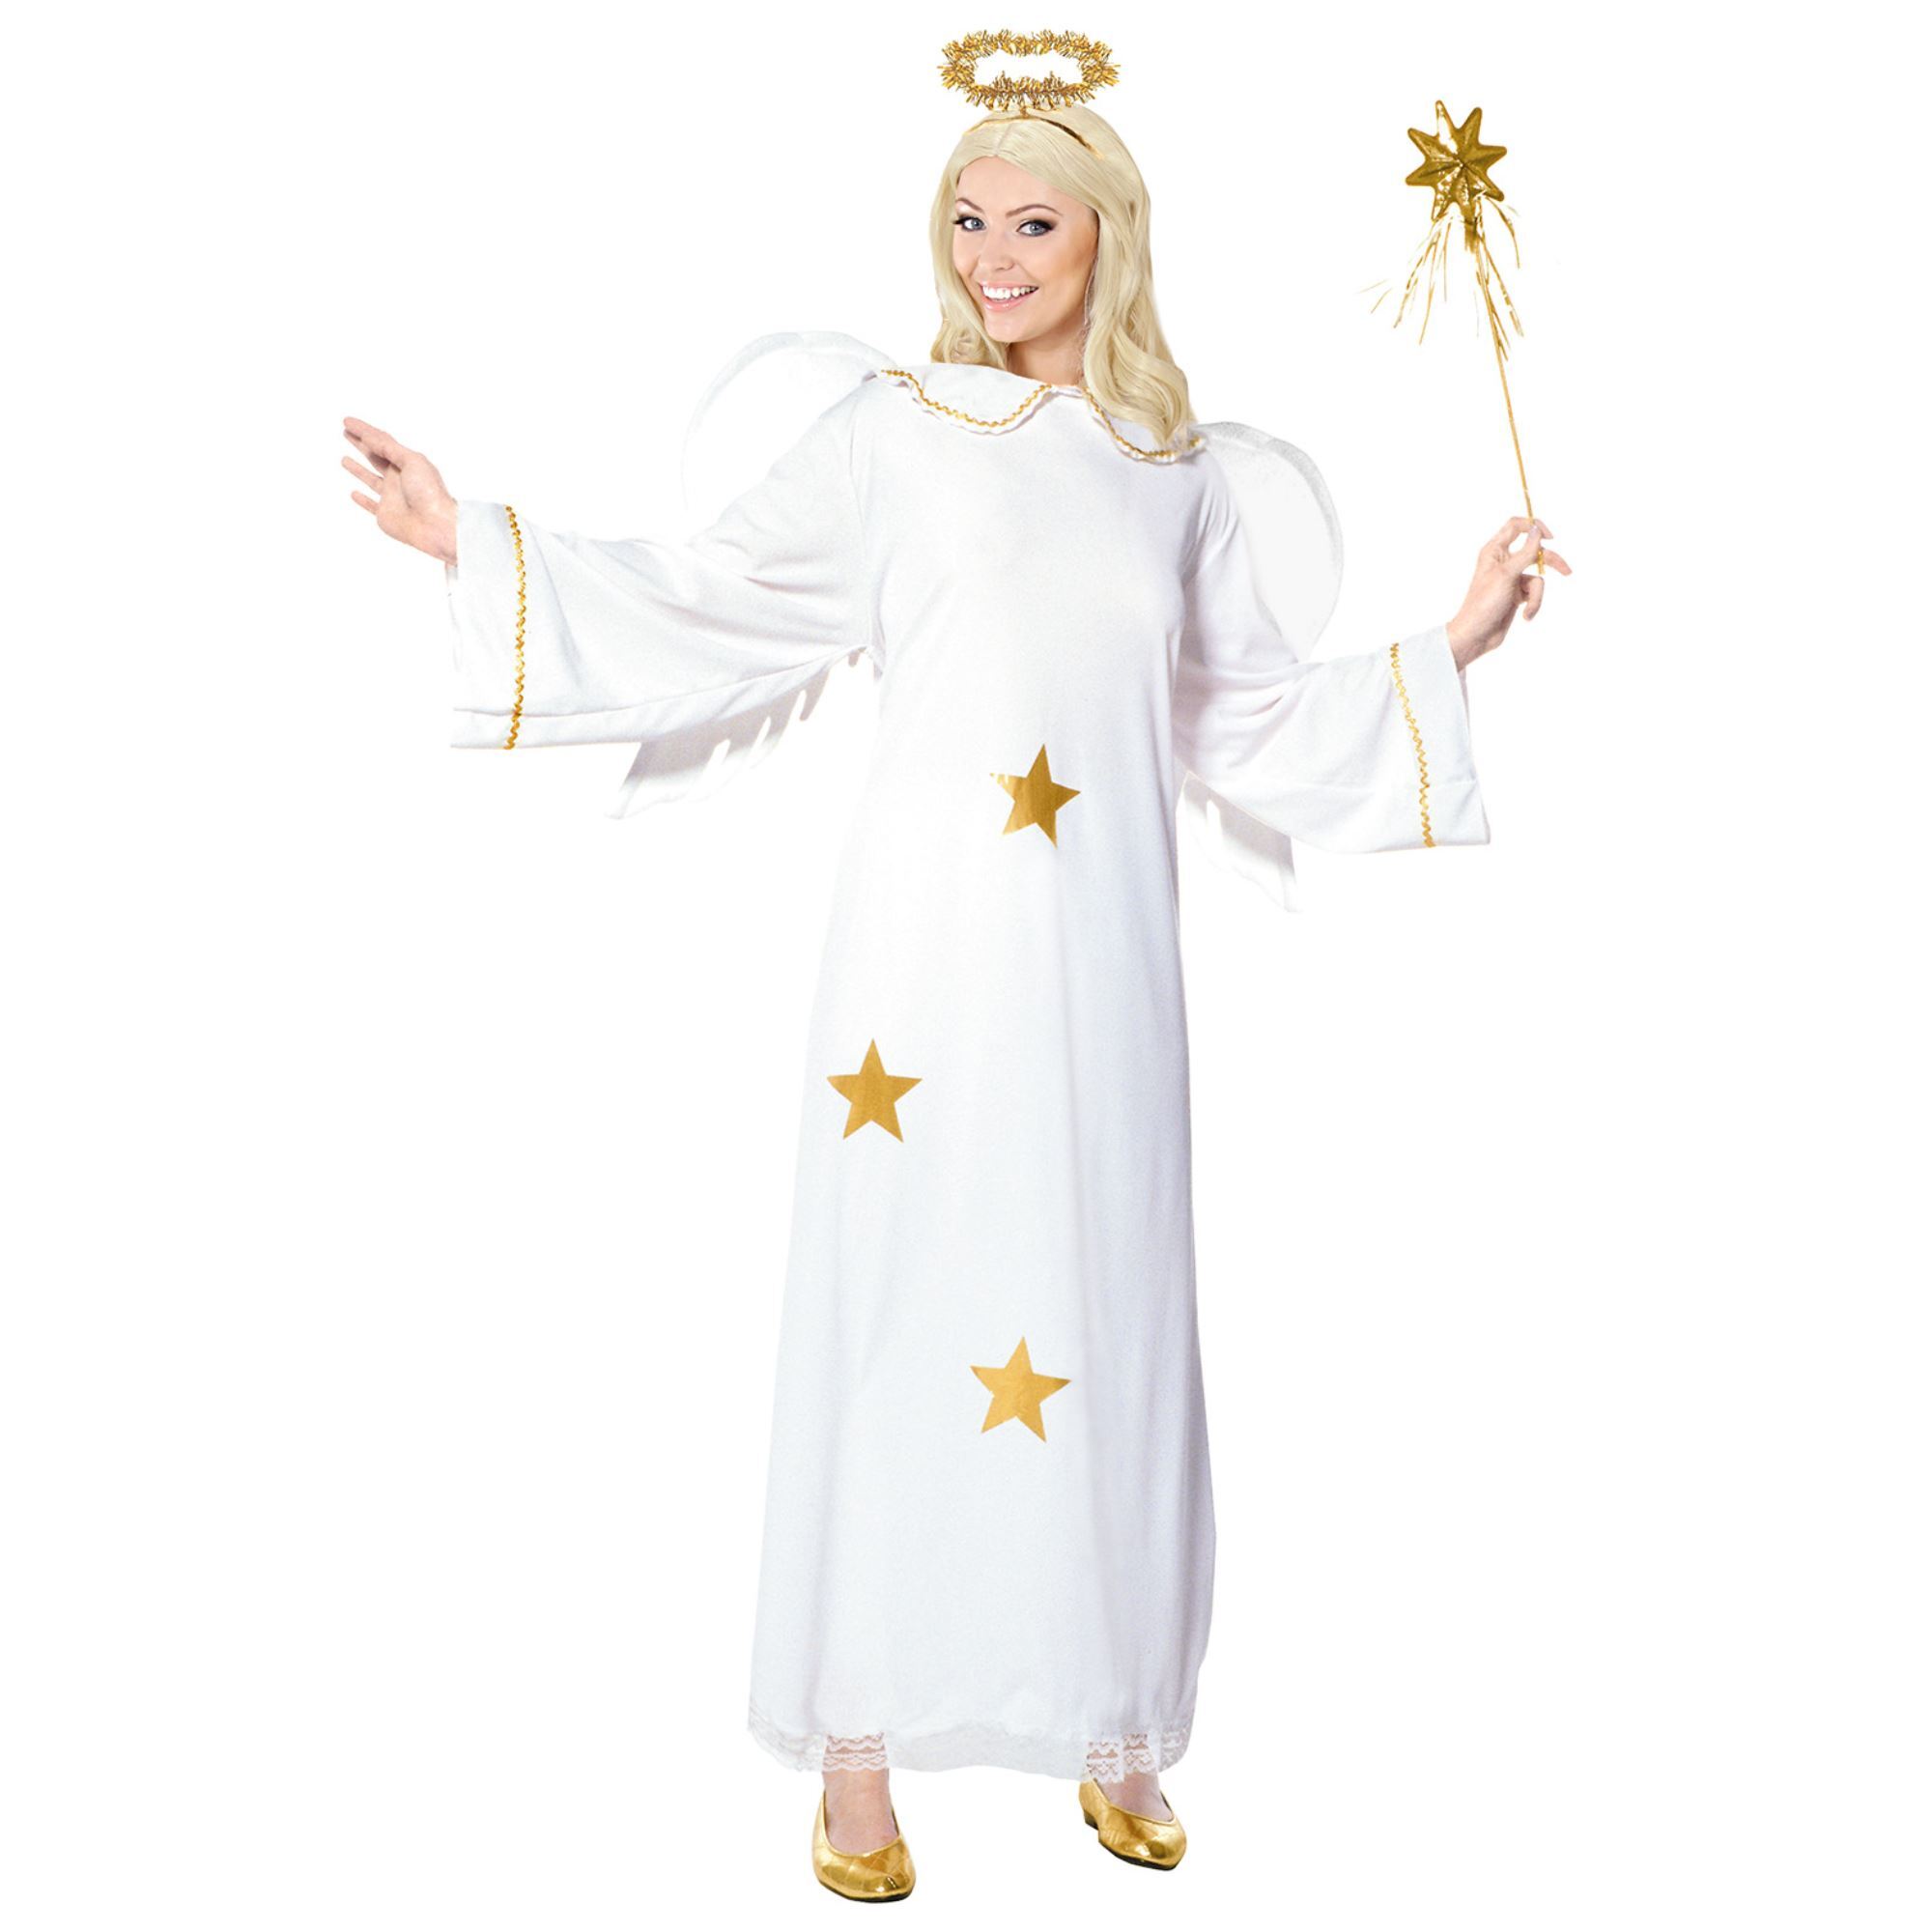 Engel kostuum volwassen wit met sterren